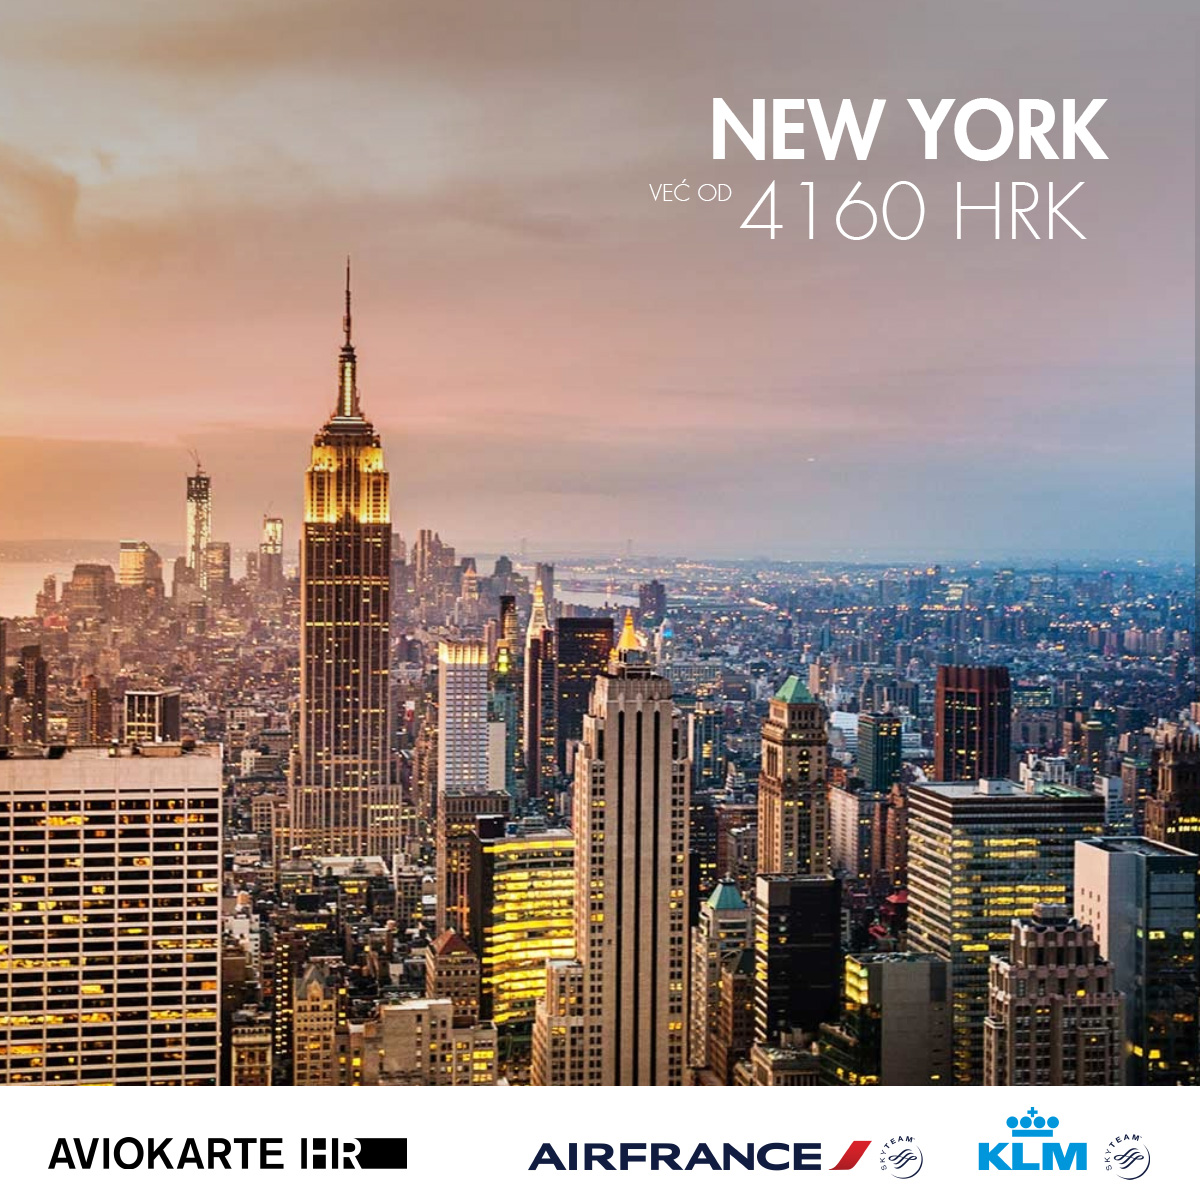 New York vizual, New York već od 1400 kuna, New York jeftine avio karte, putovanje za New York 